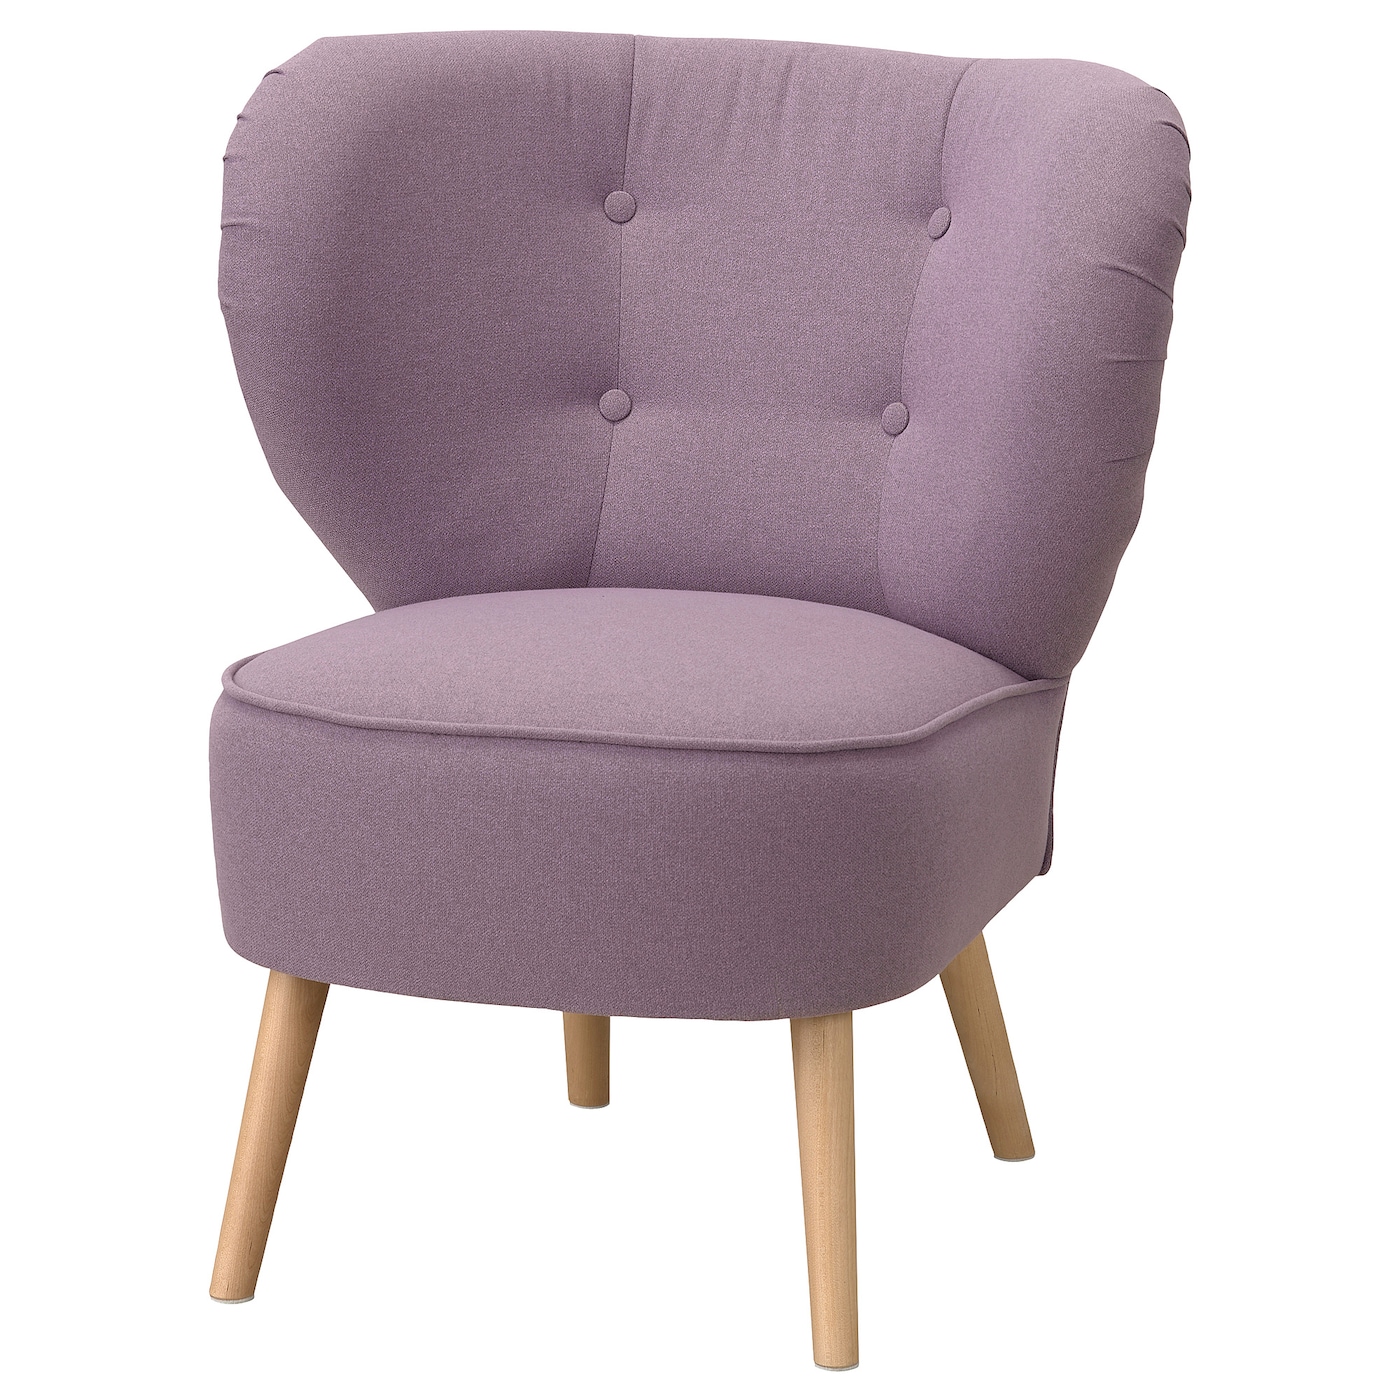 Кресло - IKEA GUBBO, 67х72х80 см, сиреневый, ГУББО ИКЕА